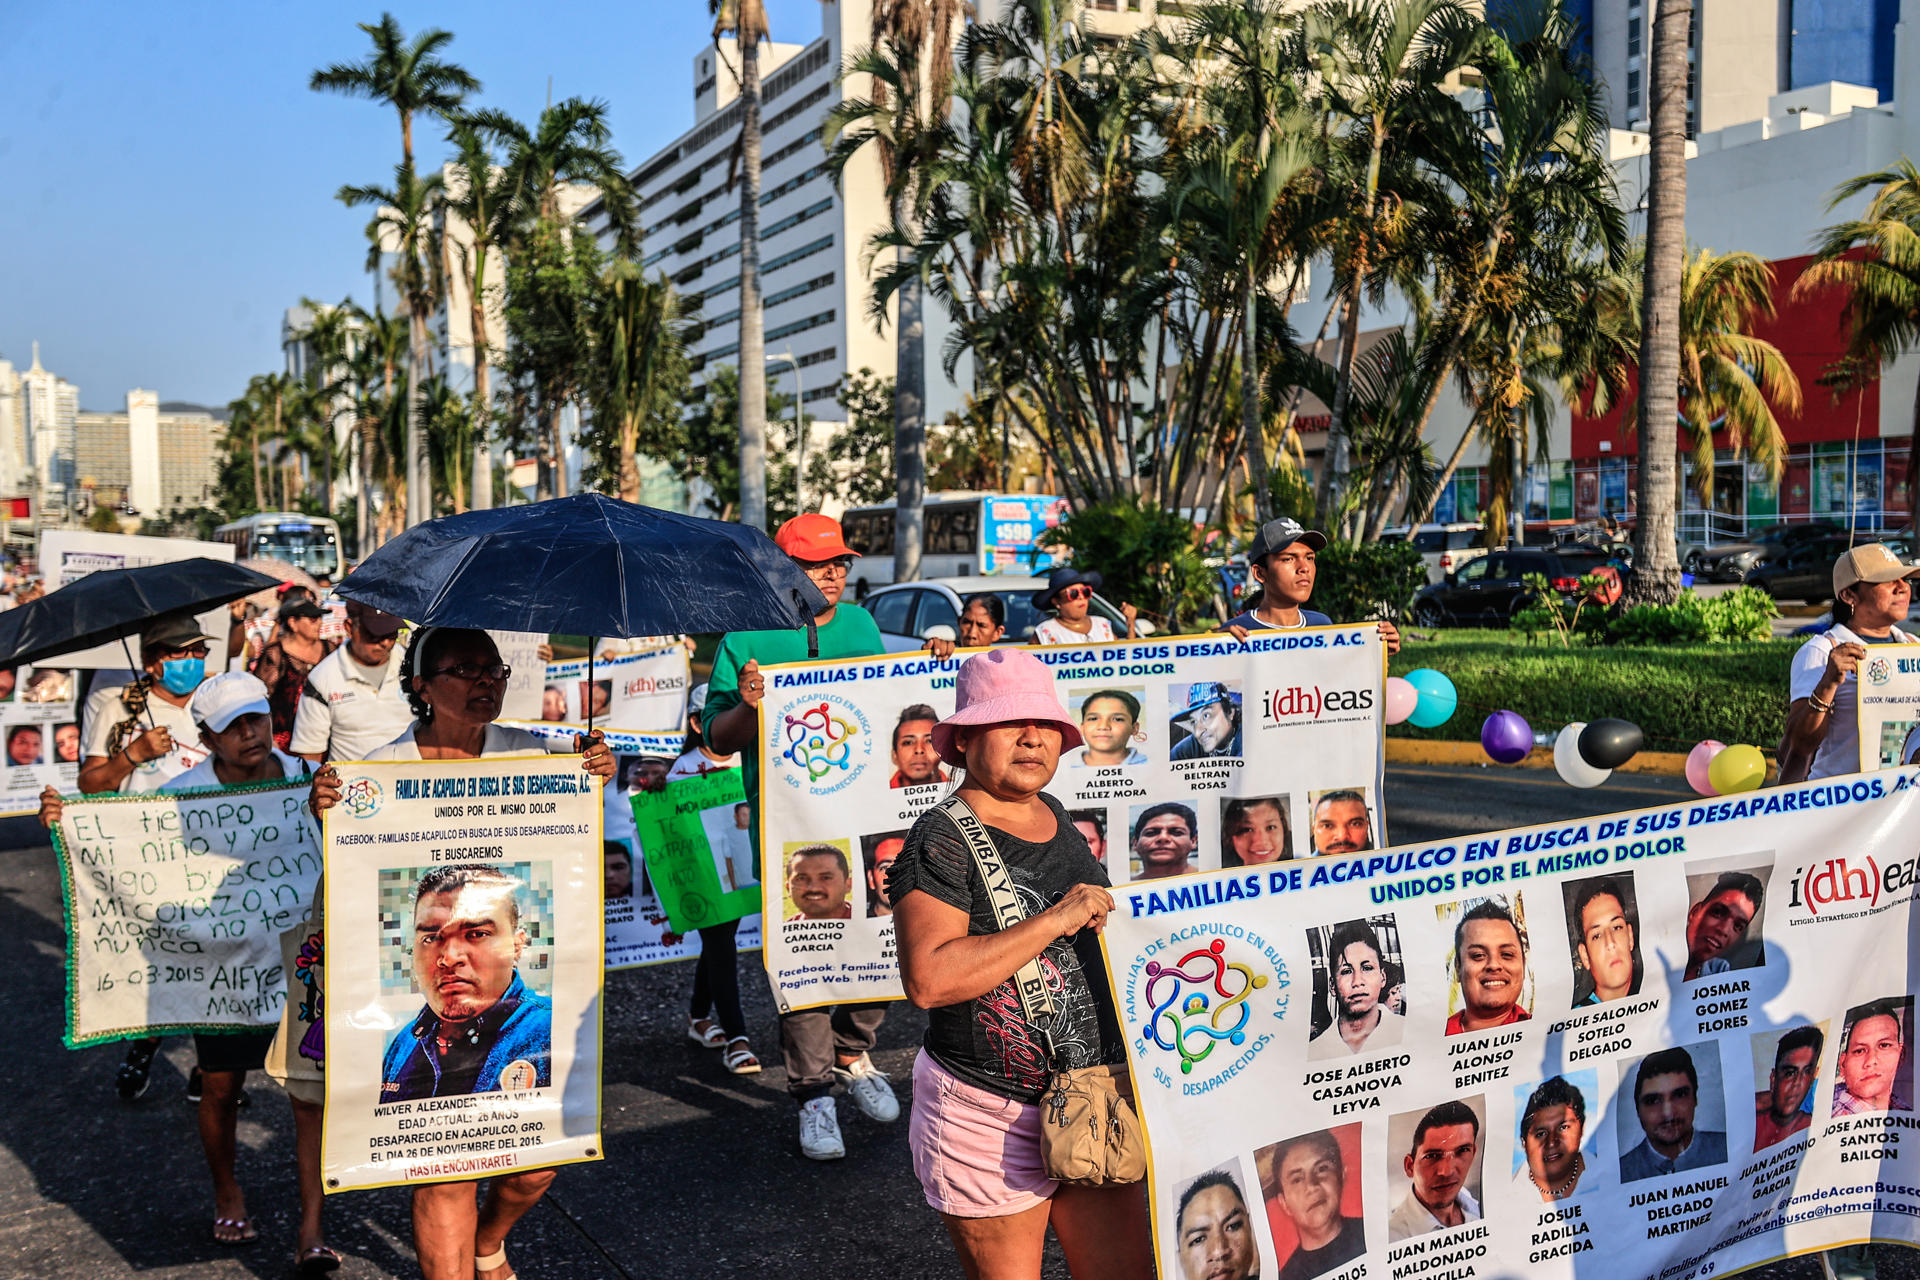 La marcha en Acapulco